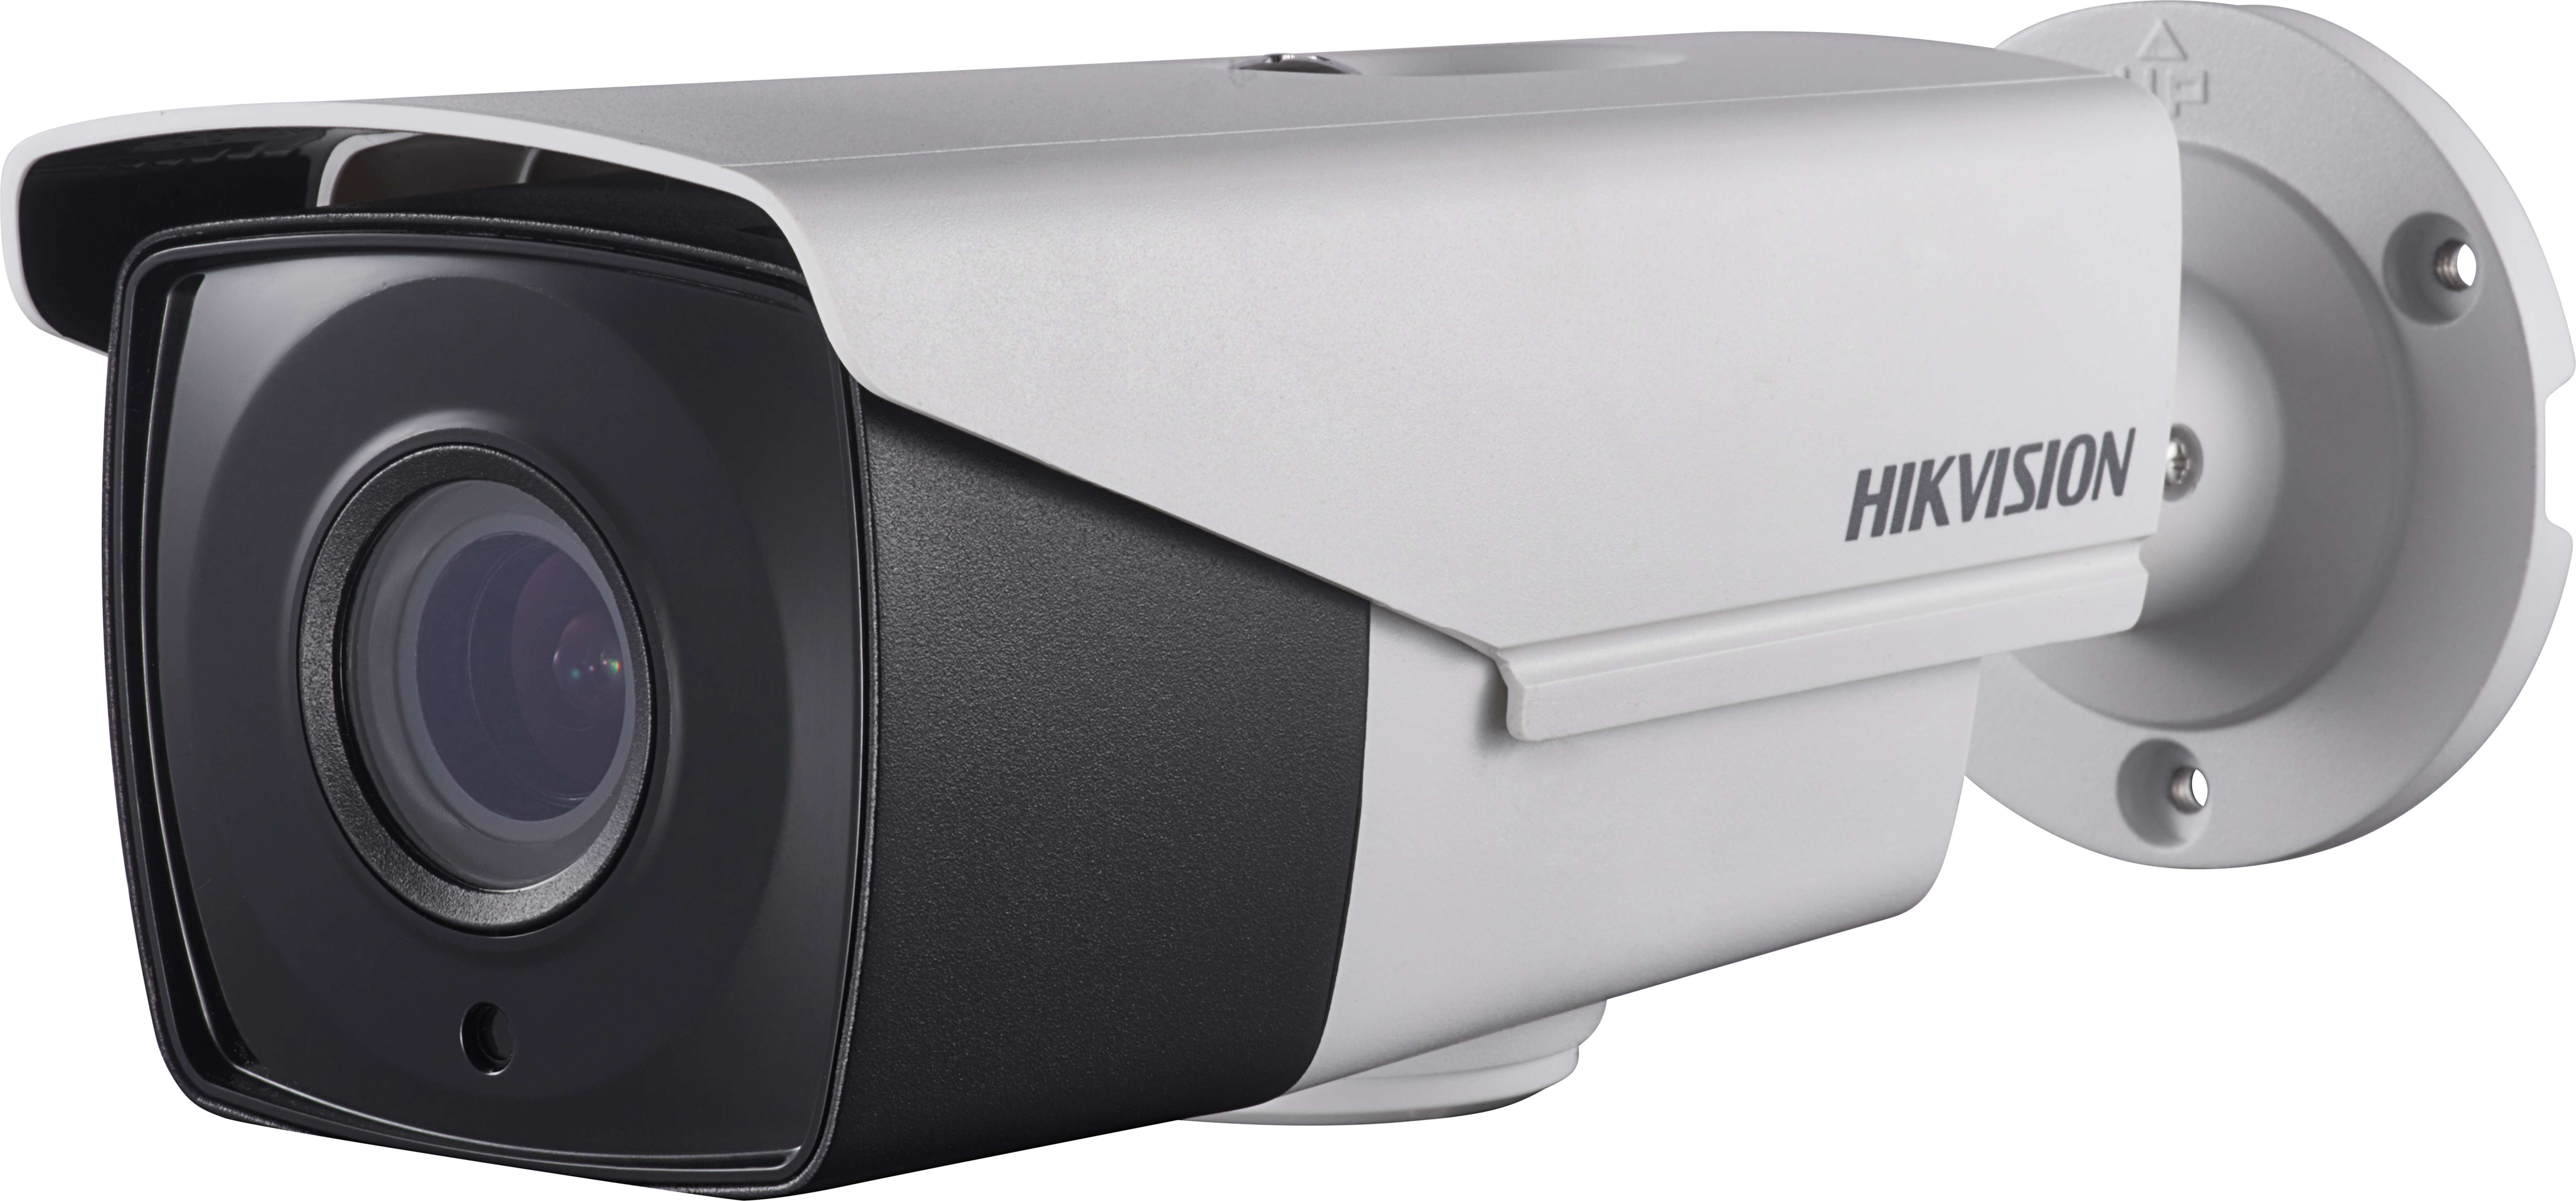 Hikvision DS-2CE16D8T-AIT3Z 2.8-12mm - 2MP TVI kamera u bullet kućištu.